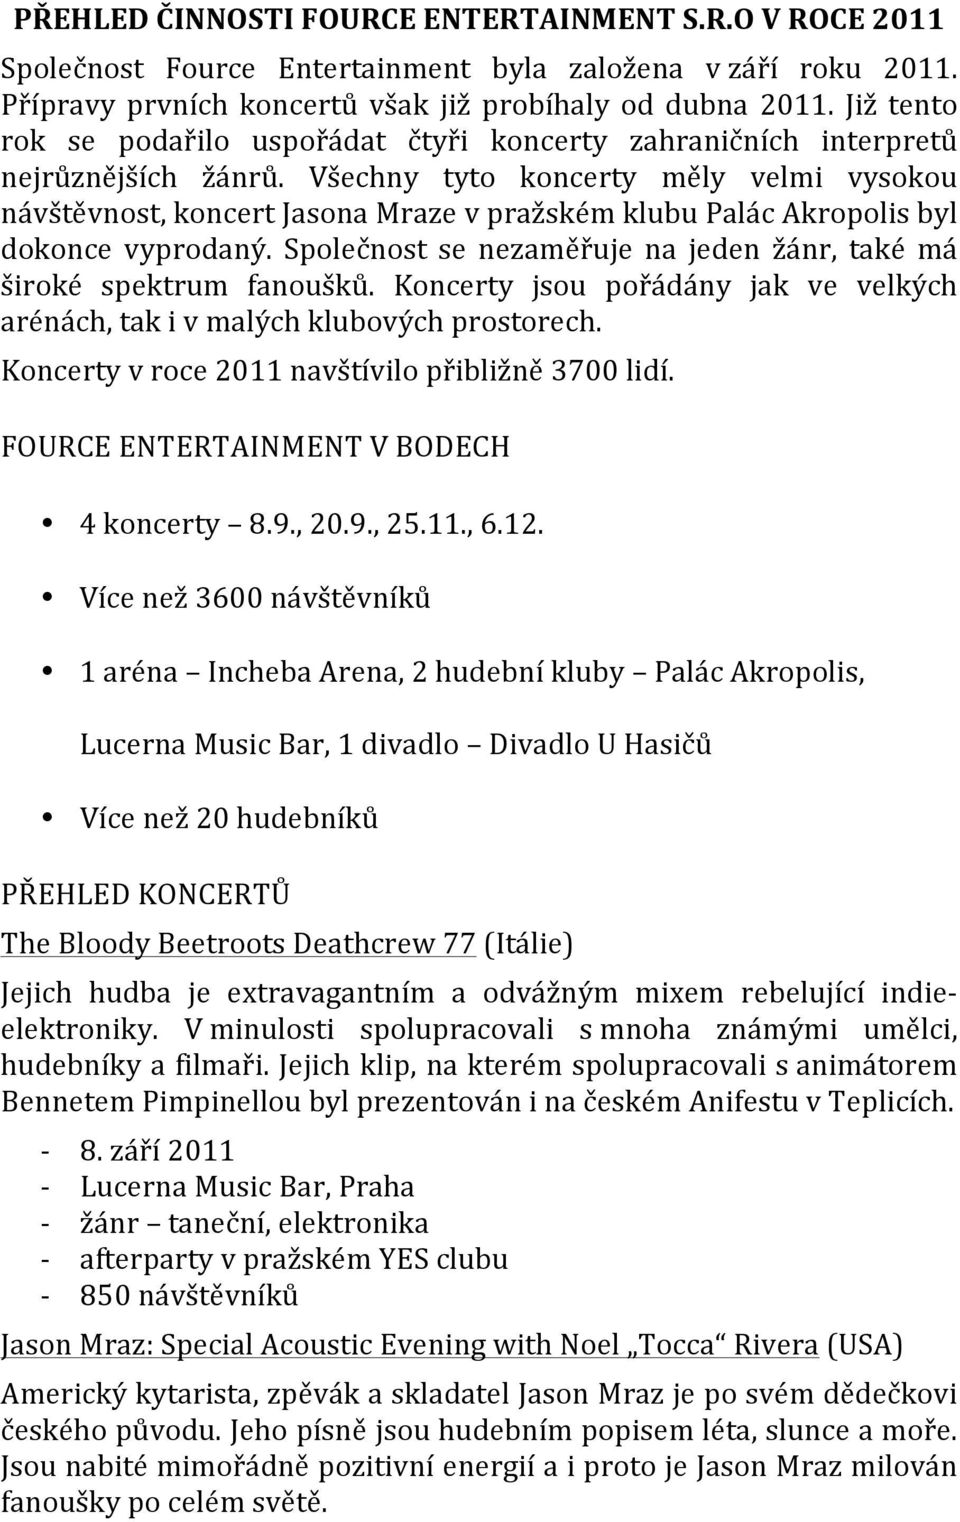 Všechny tyto koncerty měly velmi vysokou návštěvnost, koncert Jasona Mraze v pražském klubu Palác Akropolis byl dokonce vyprodaný.